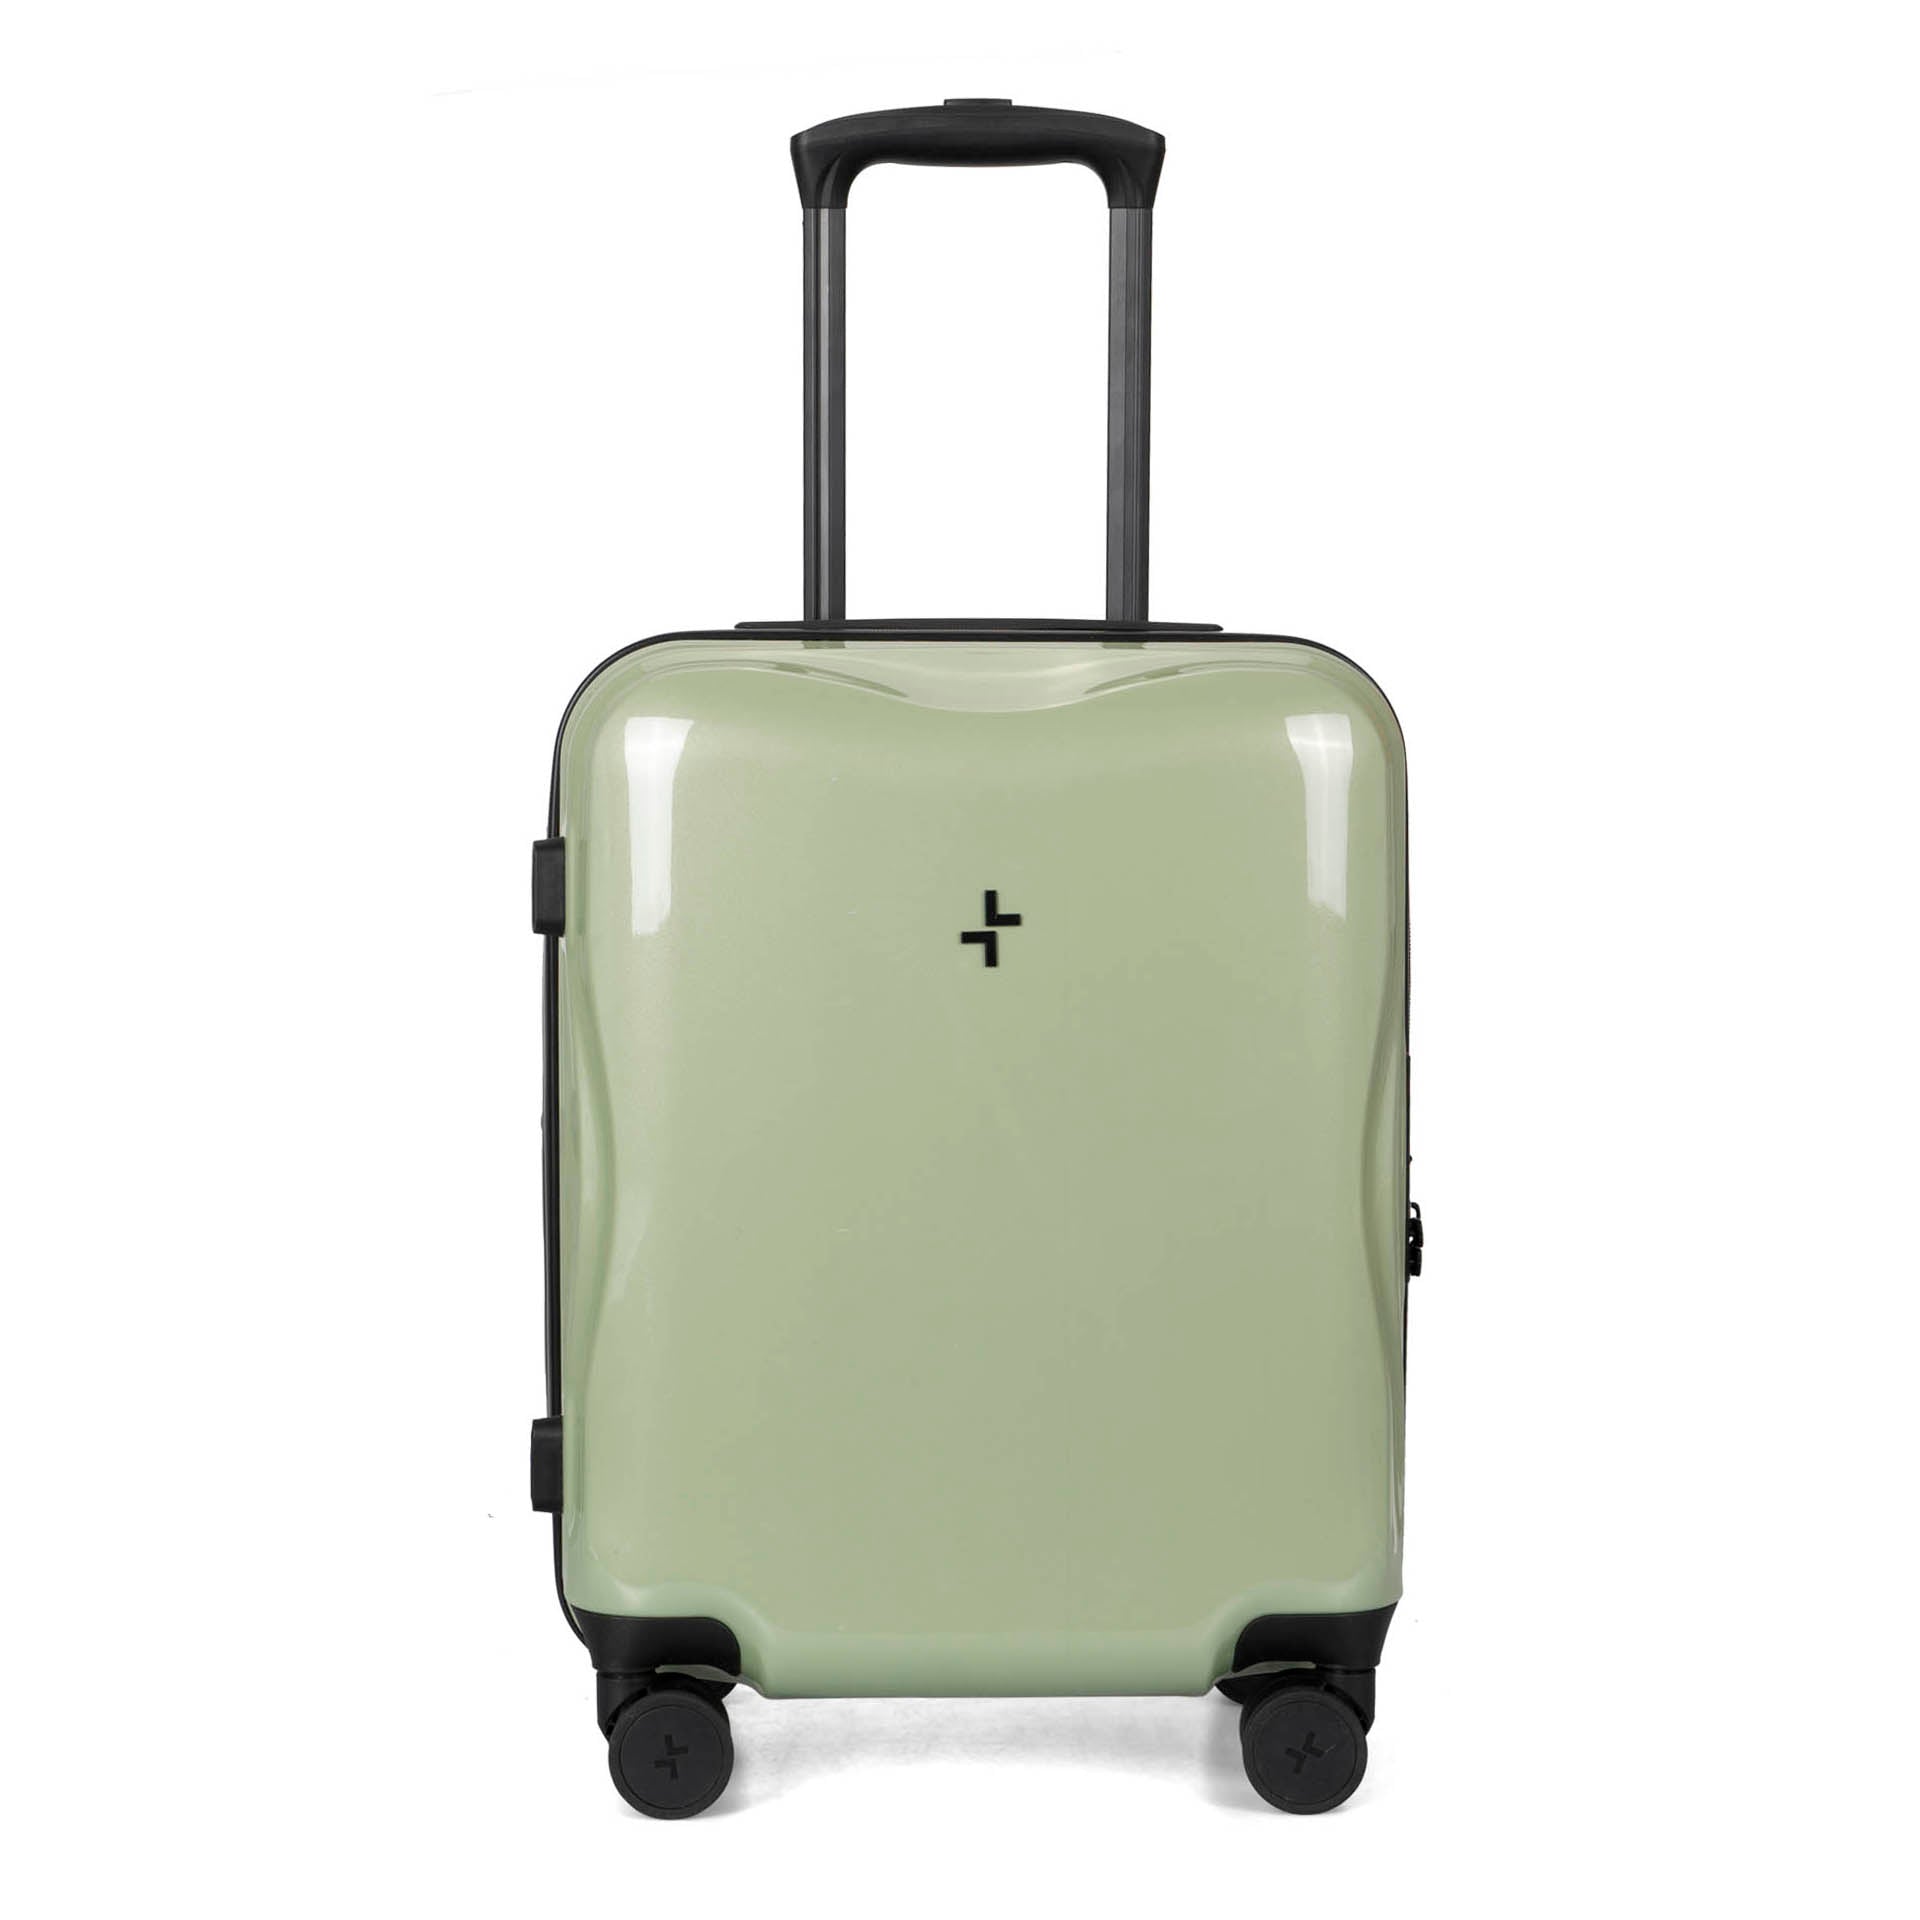 Bentley Bentayga Schedoni Luggage Set | PCARMARKET